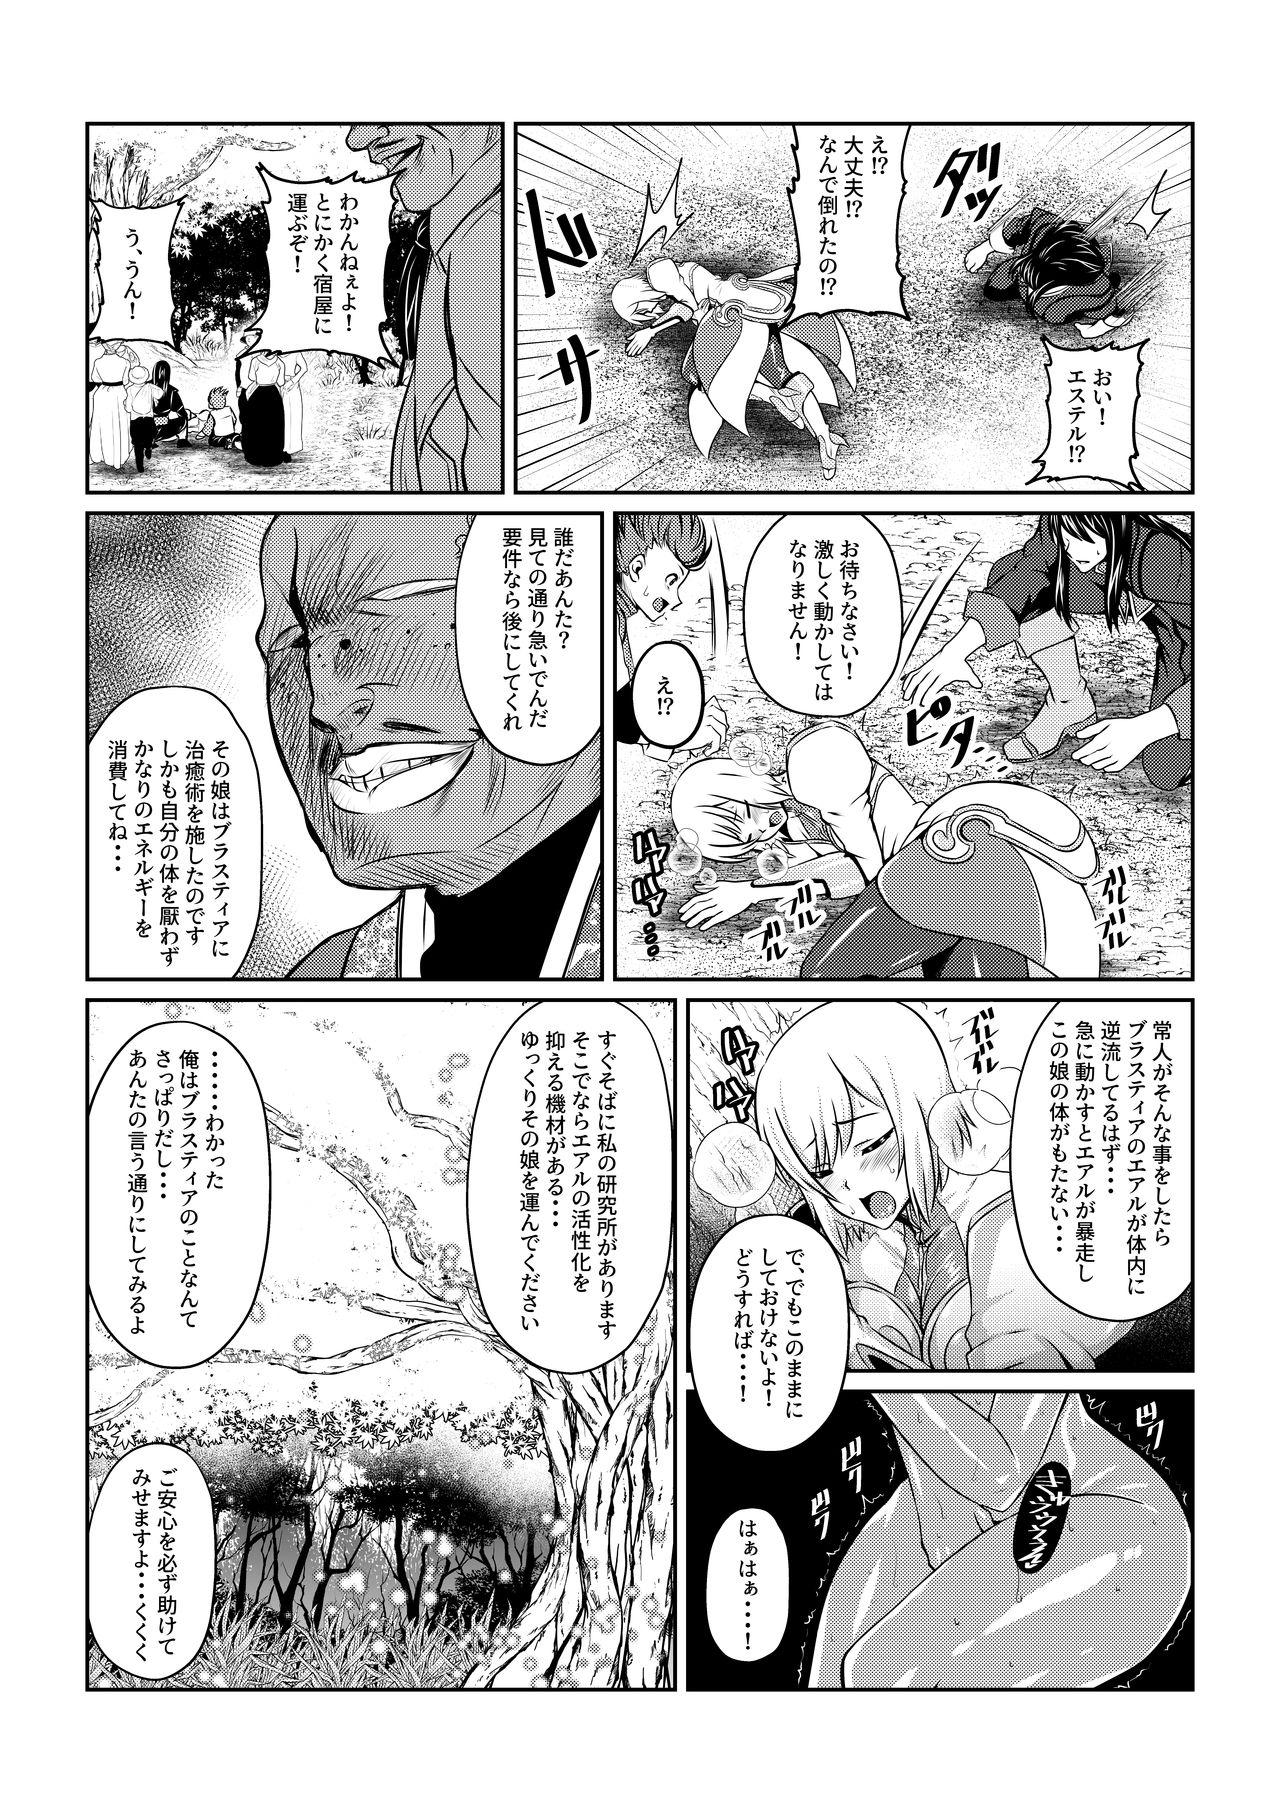 For Gekka Midarezaki - Tales of vesperia Korea - Page 3